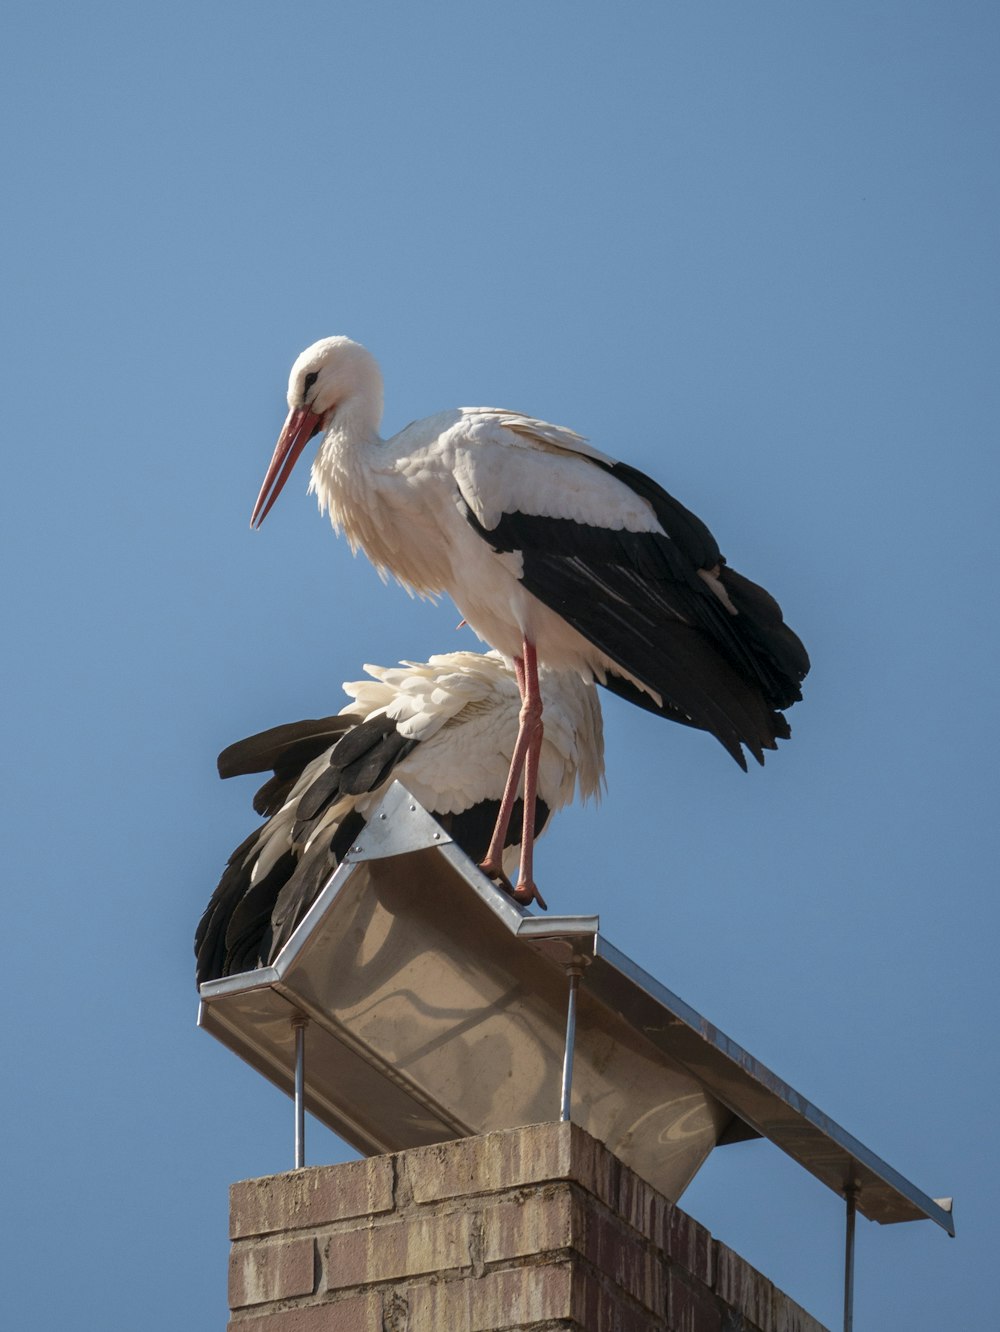 Un pájaro blanco y negro sentado encima de una chimenea de ladrillo